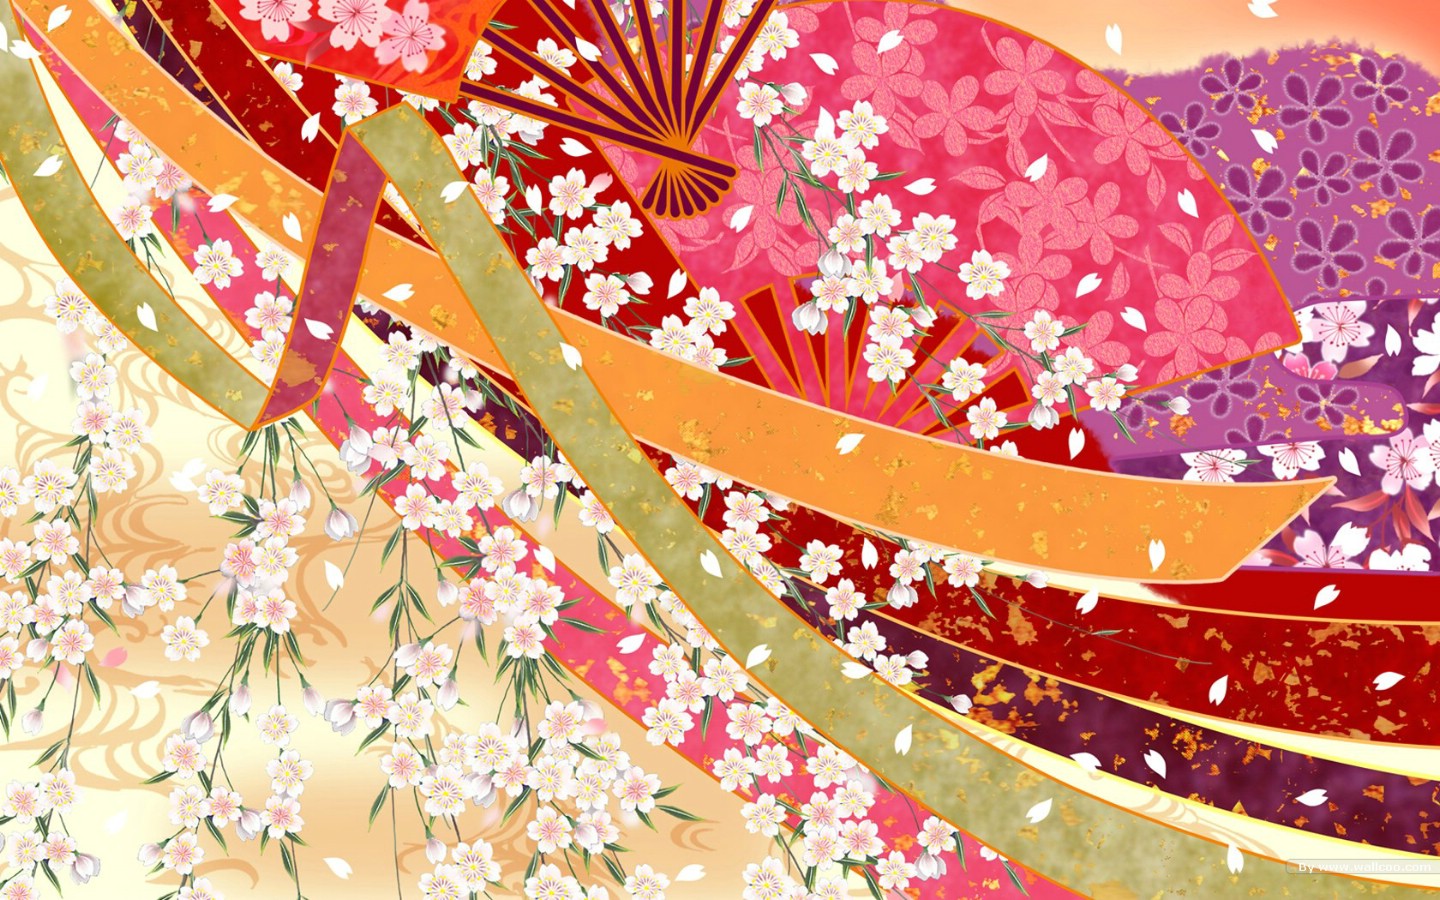 壁纸1440x900日本风格色彩与图案设计壁纸 美丽碎花布 日本风格色彩图案壁纸 日本风格色彩设计壁纸 日本风格色彩设计图片 日本风格色彩设计素材 插画壁纸 插画图库 插画图片素材桌面壁纸